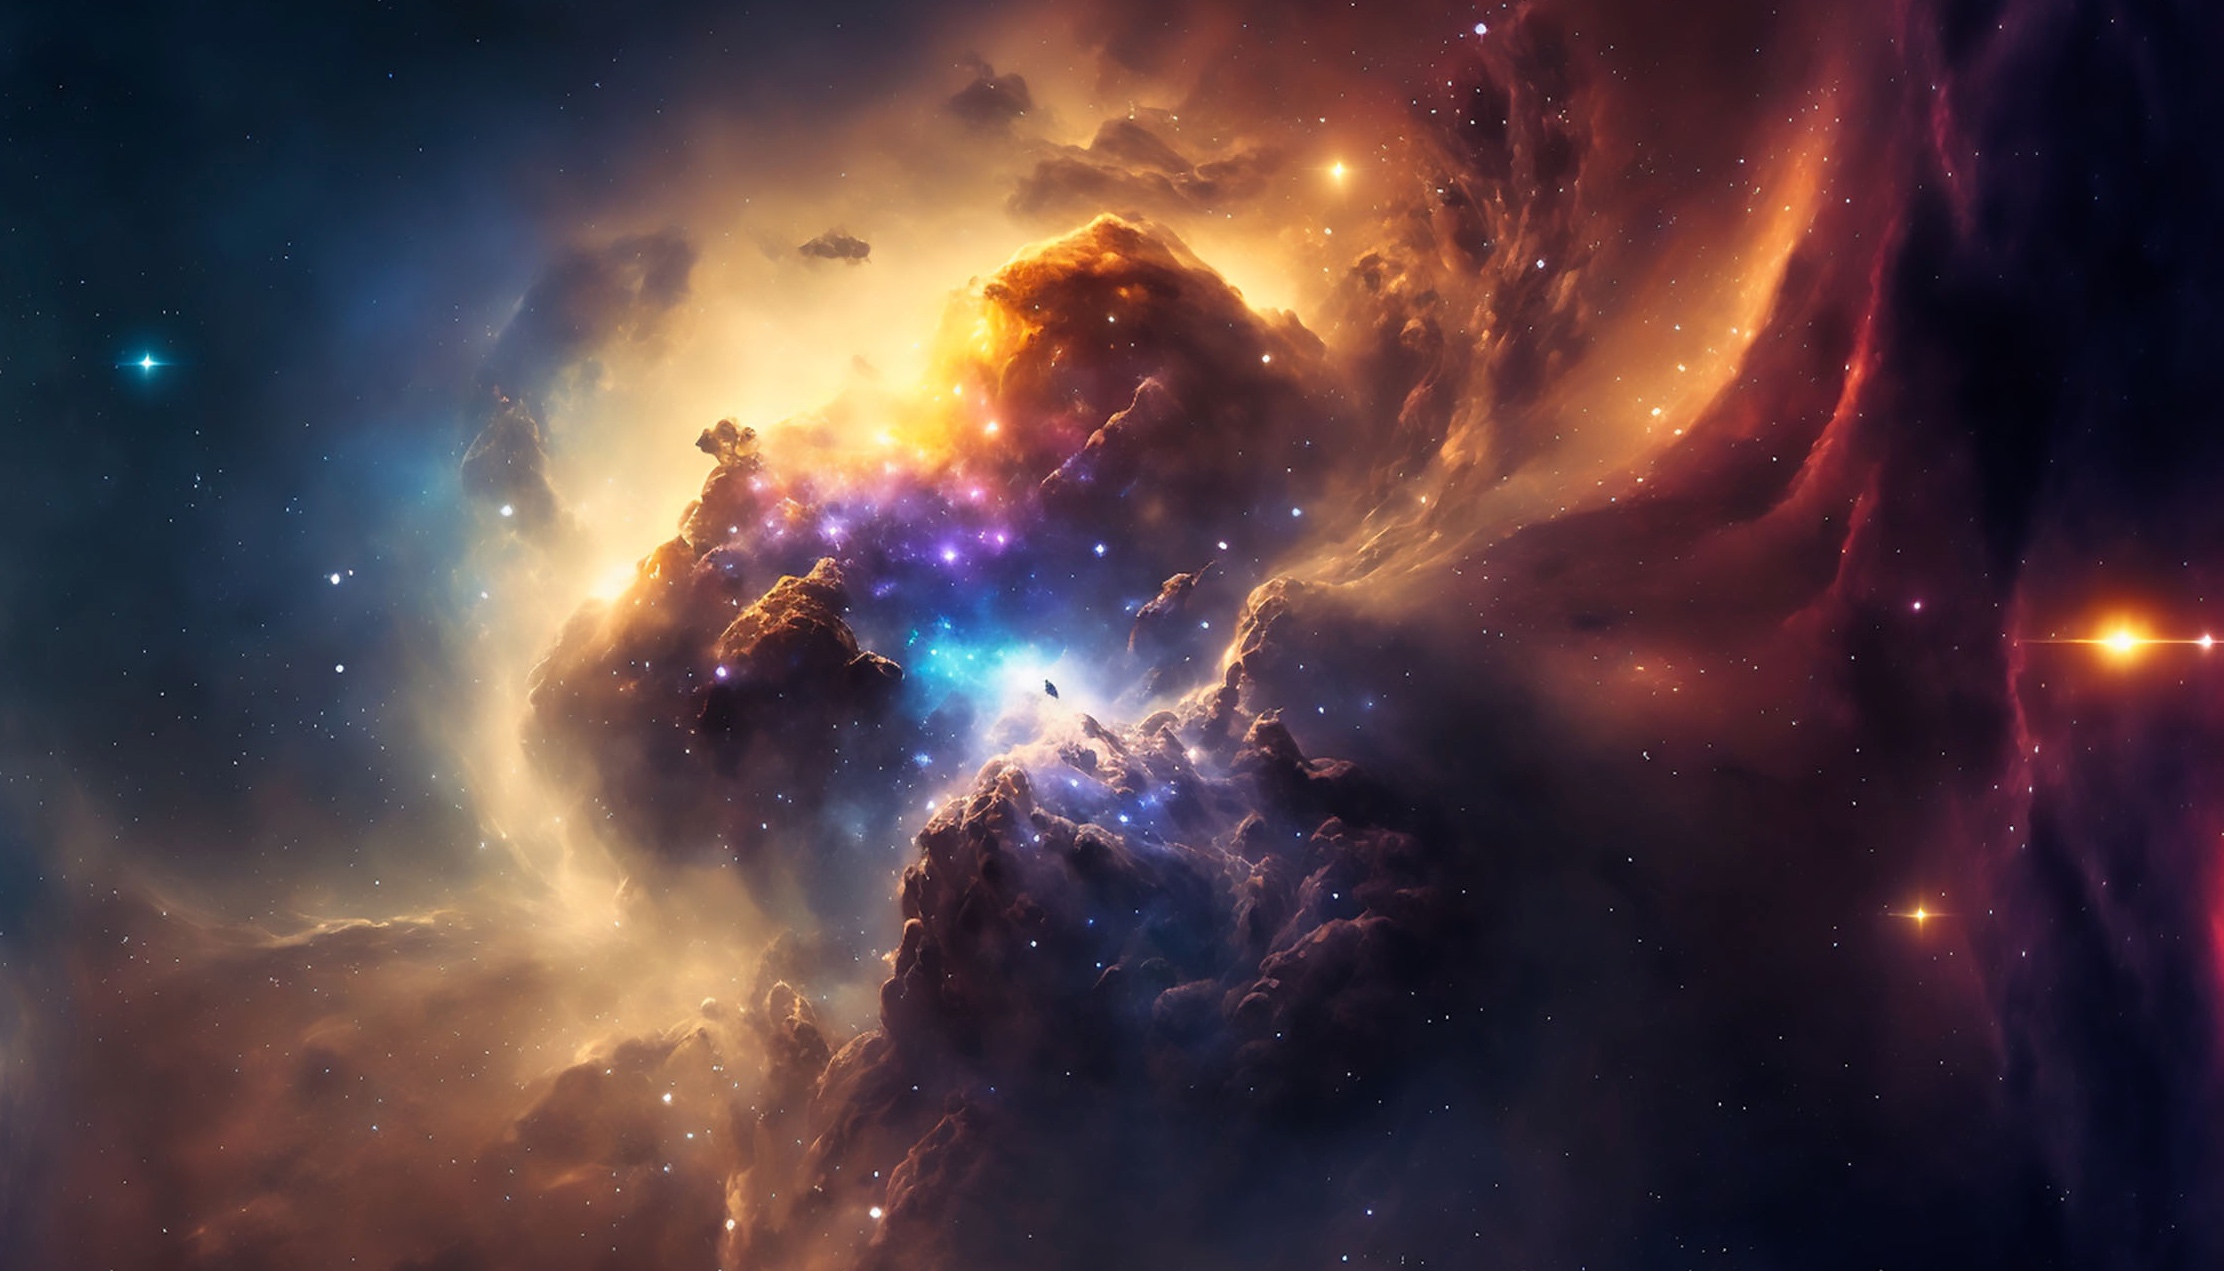 Une vue d'artiste de la formation des étoiles aujourd'hui dans des nuages moléculaires poussiéreux enrichis en « métaux » par les premières étoiles. © Anes Dreams, Adobe Stock